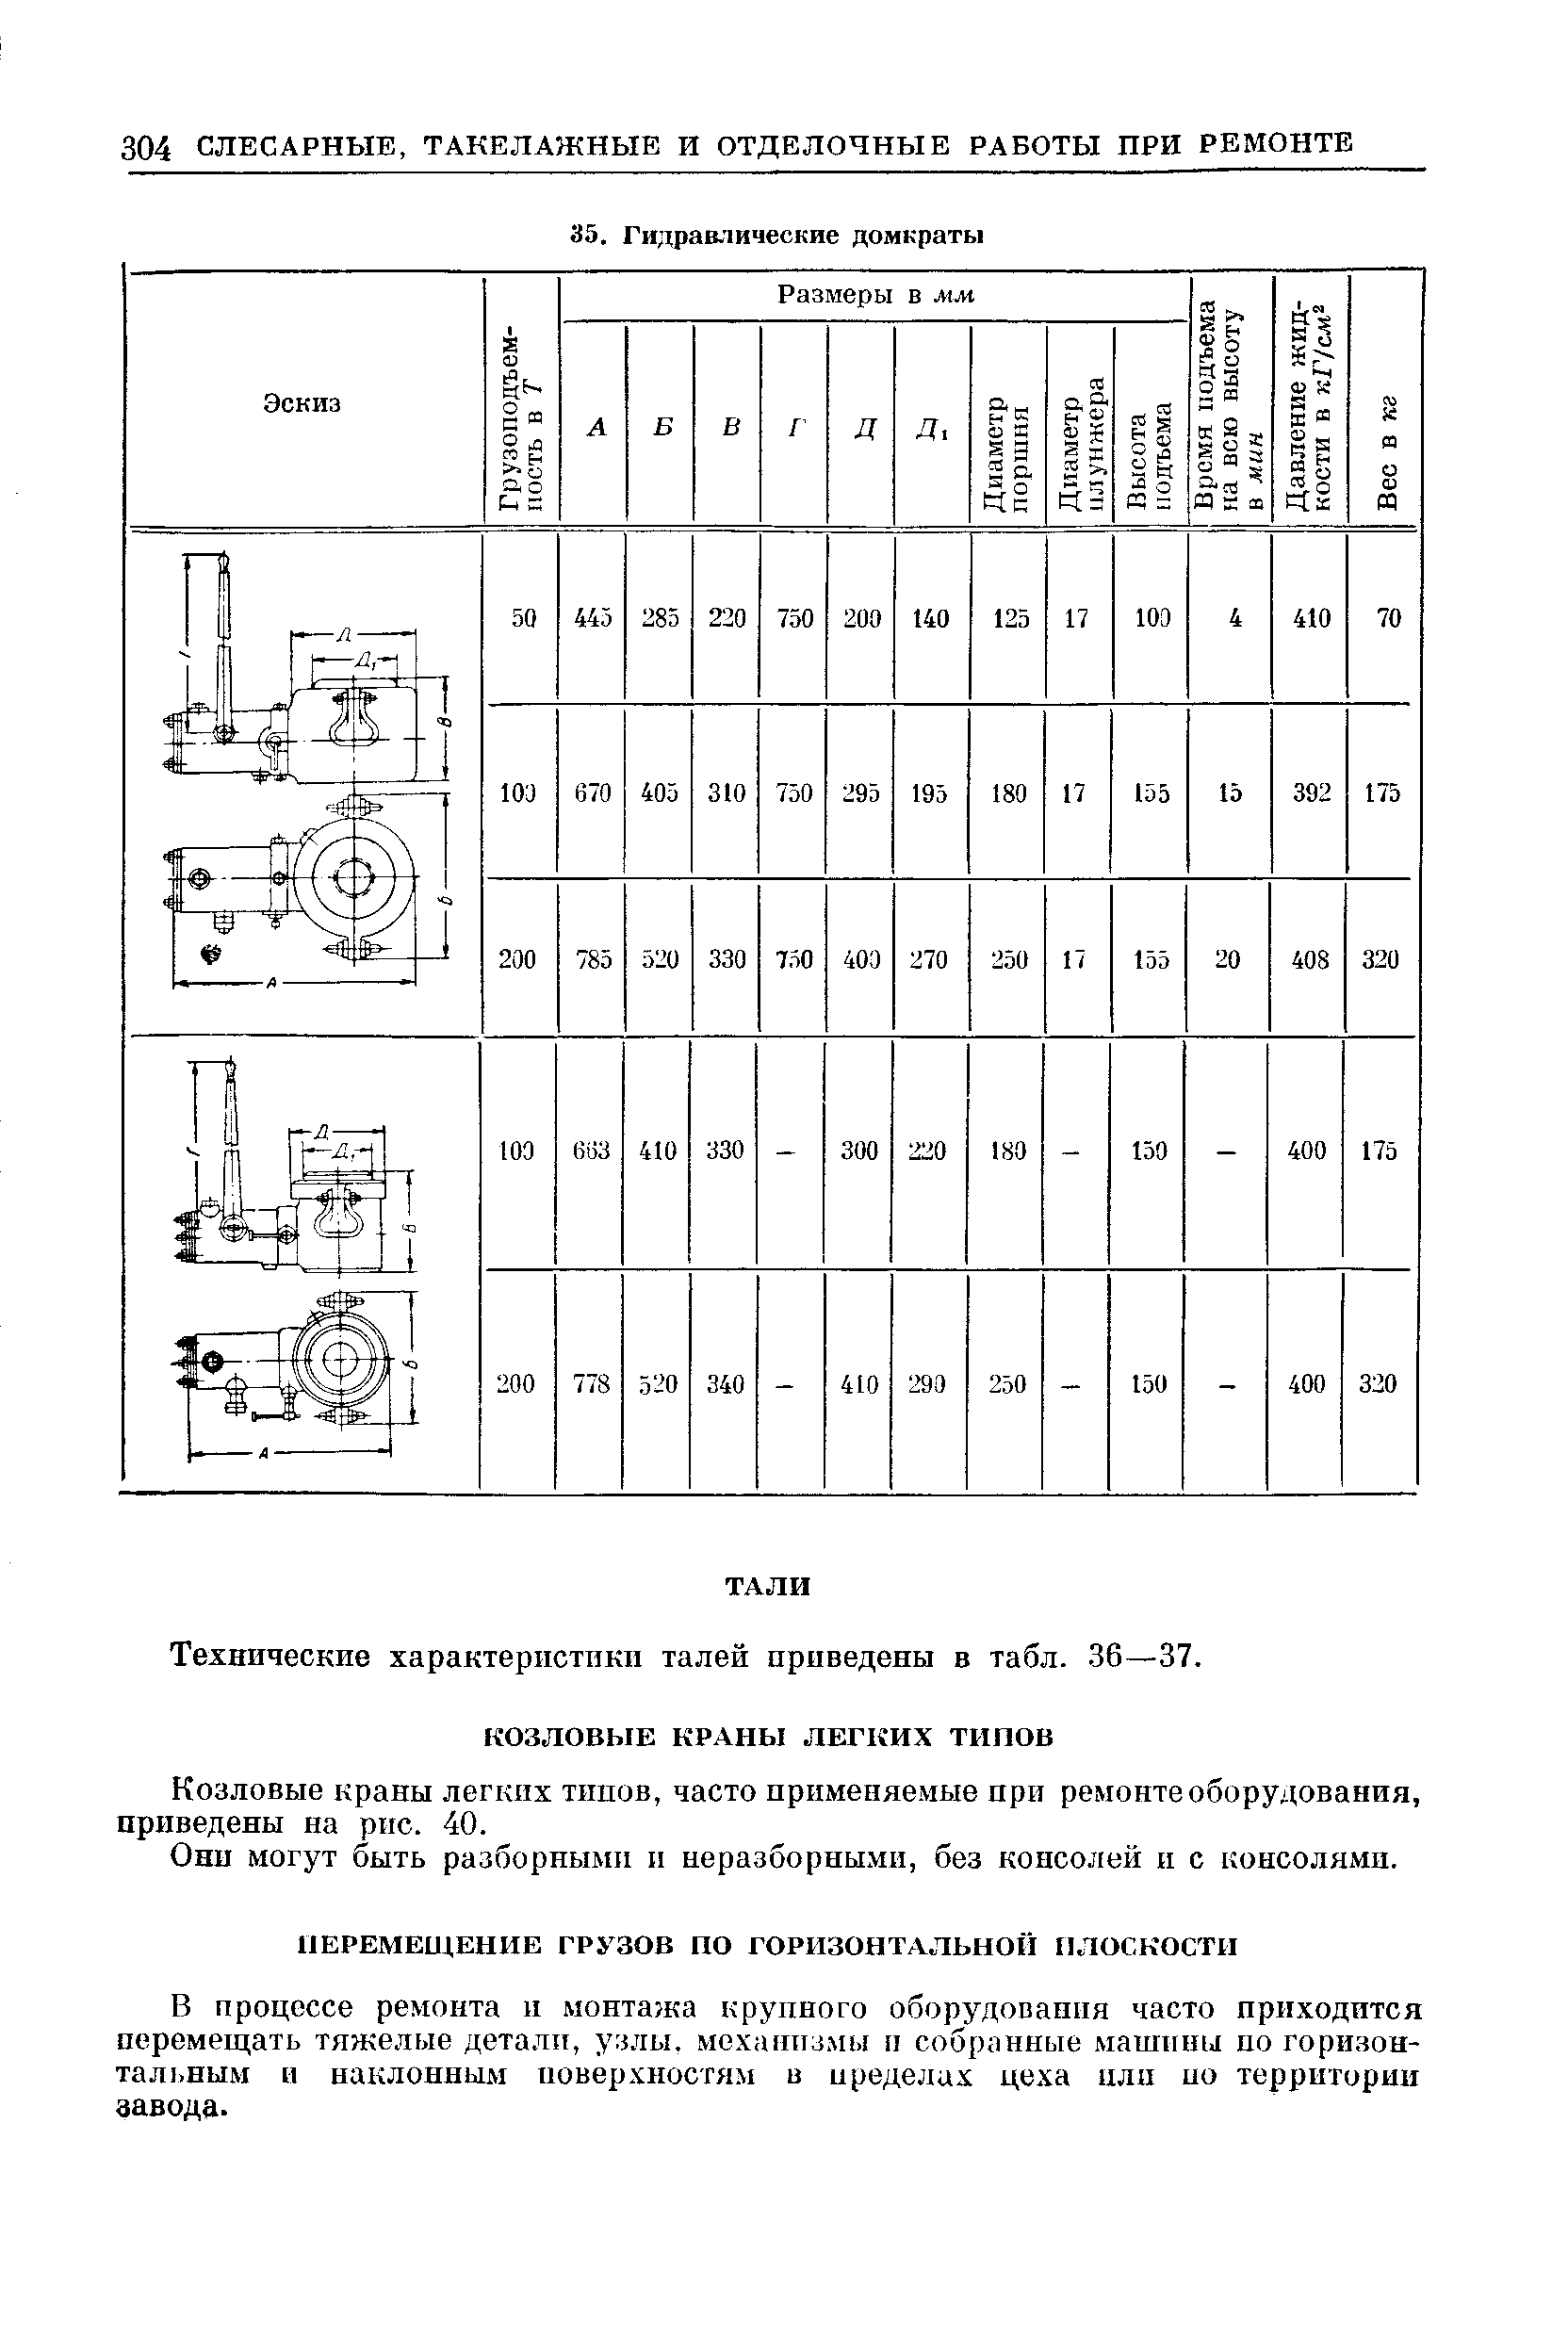 Технические характеристики талей приведены в табл. 36—37.
